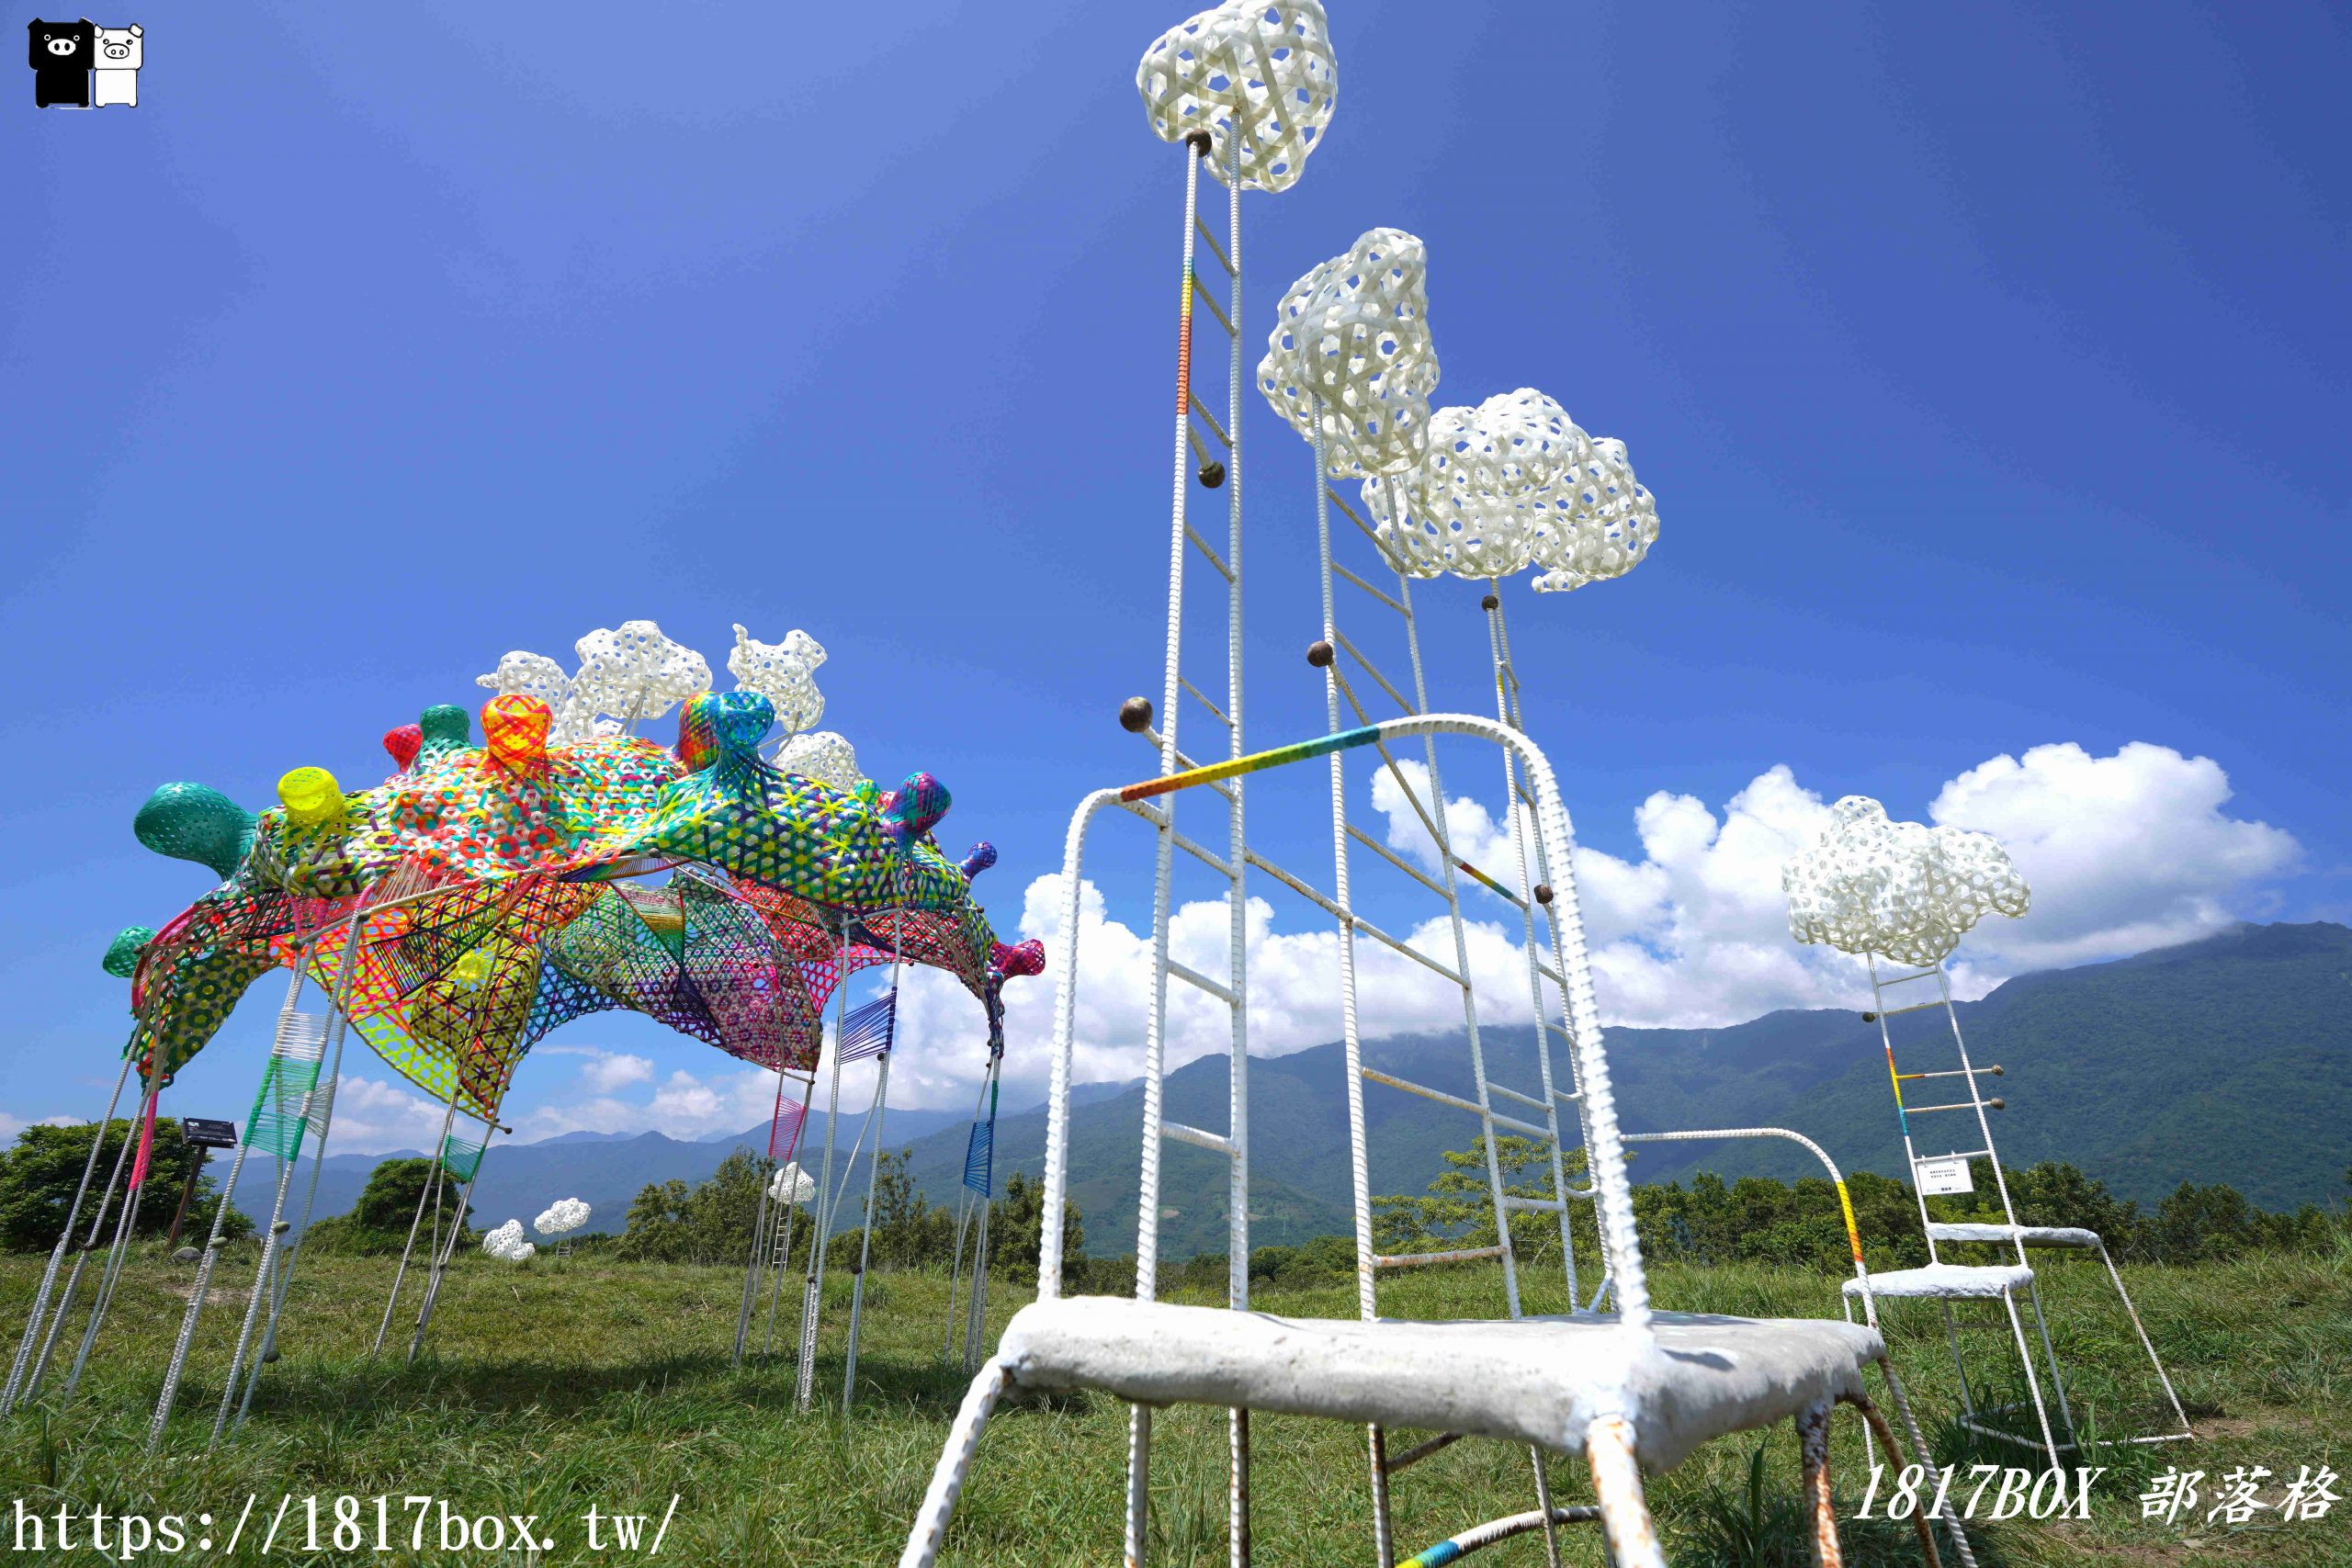 【懶人包】2021「漂鳥197-縱谷大地藝術季」。6組藝術地景創作。作品地圖 @1817BOX部落格